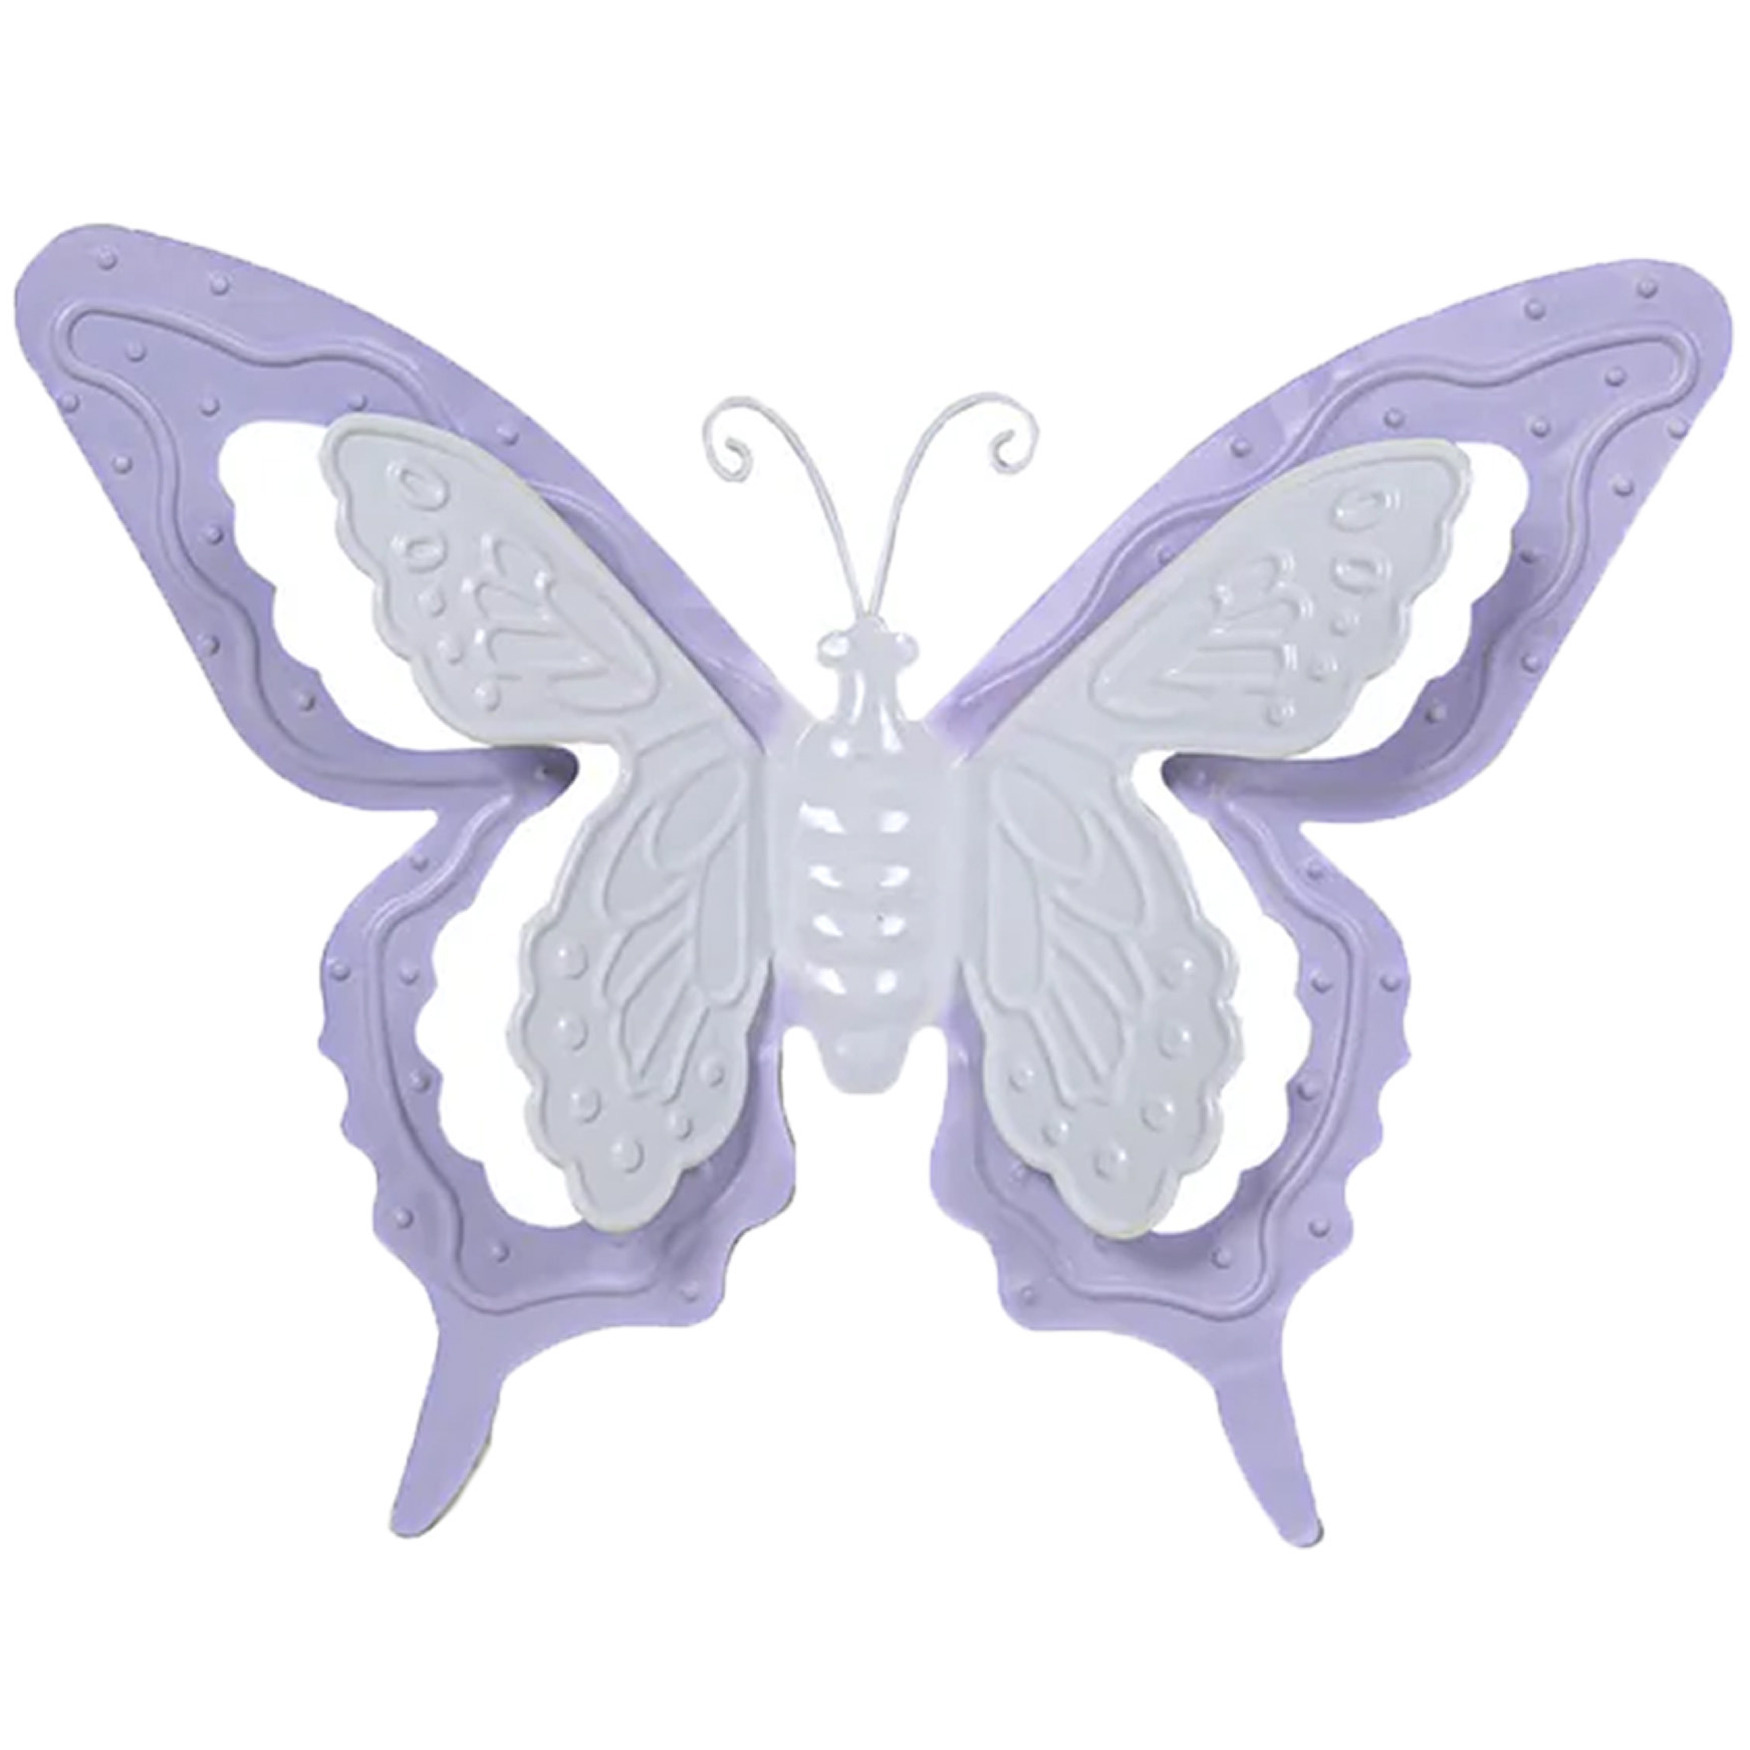 Tuin-schutting decoratie vlinder metaal lila paars 17 x 13 cm